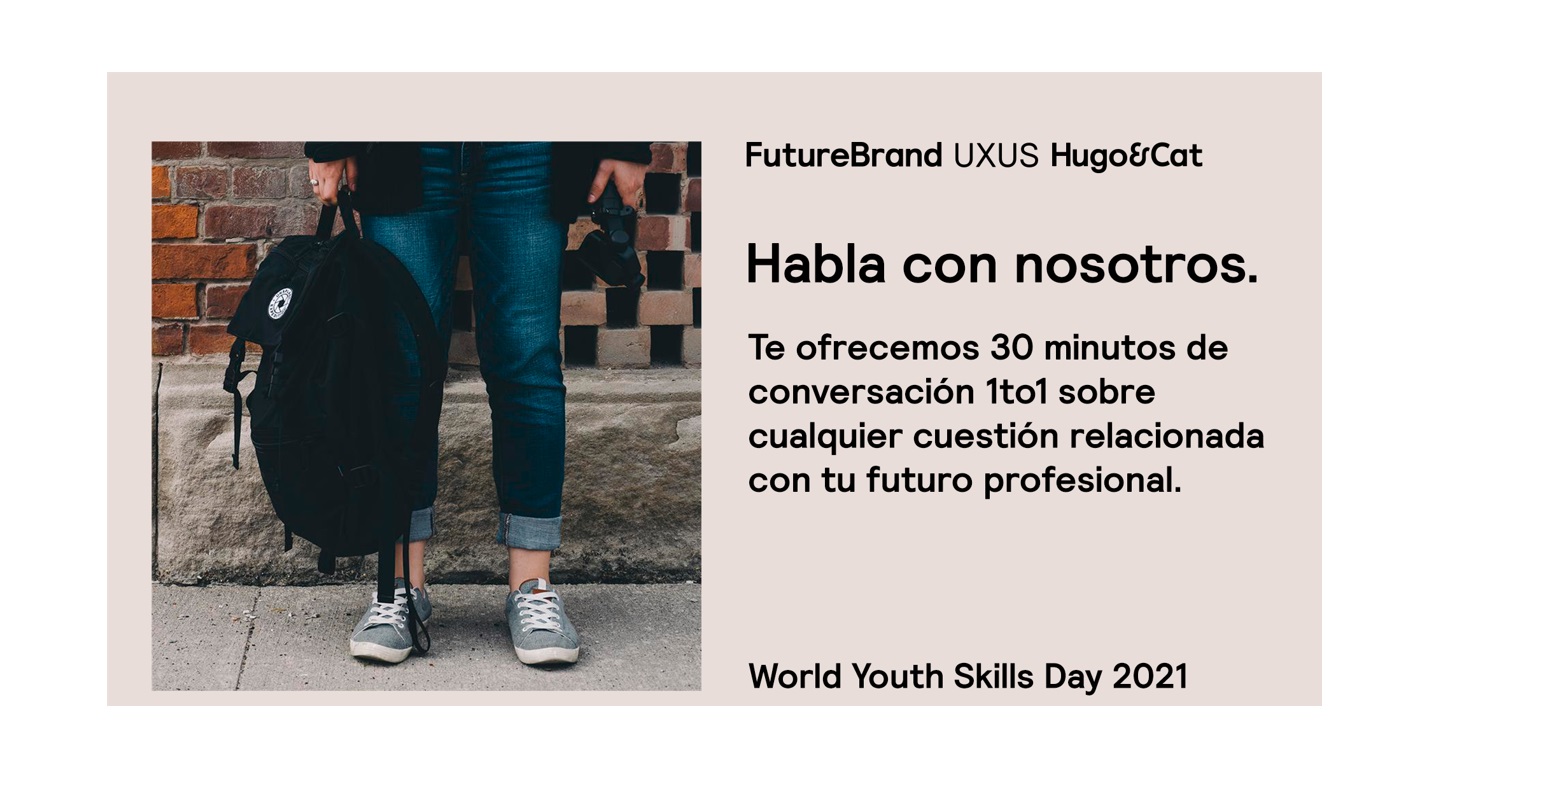 futurebrand, UXUS, habla con nosotros, world youth, skills, day , 2021, programapublicidad